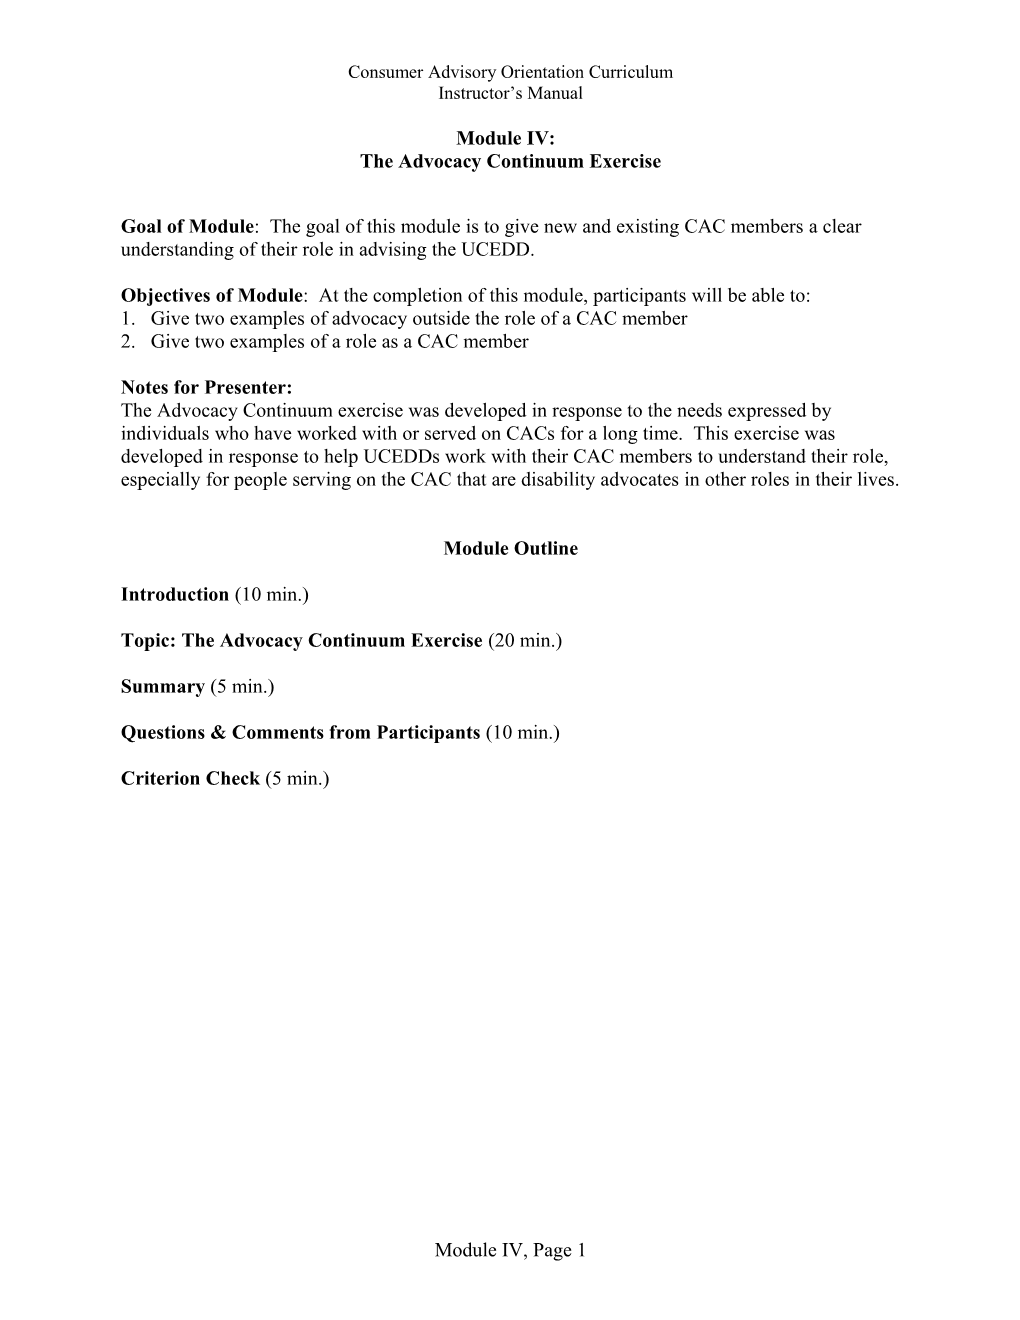 Consumer Advisory Committee Orientation Curriculum